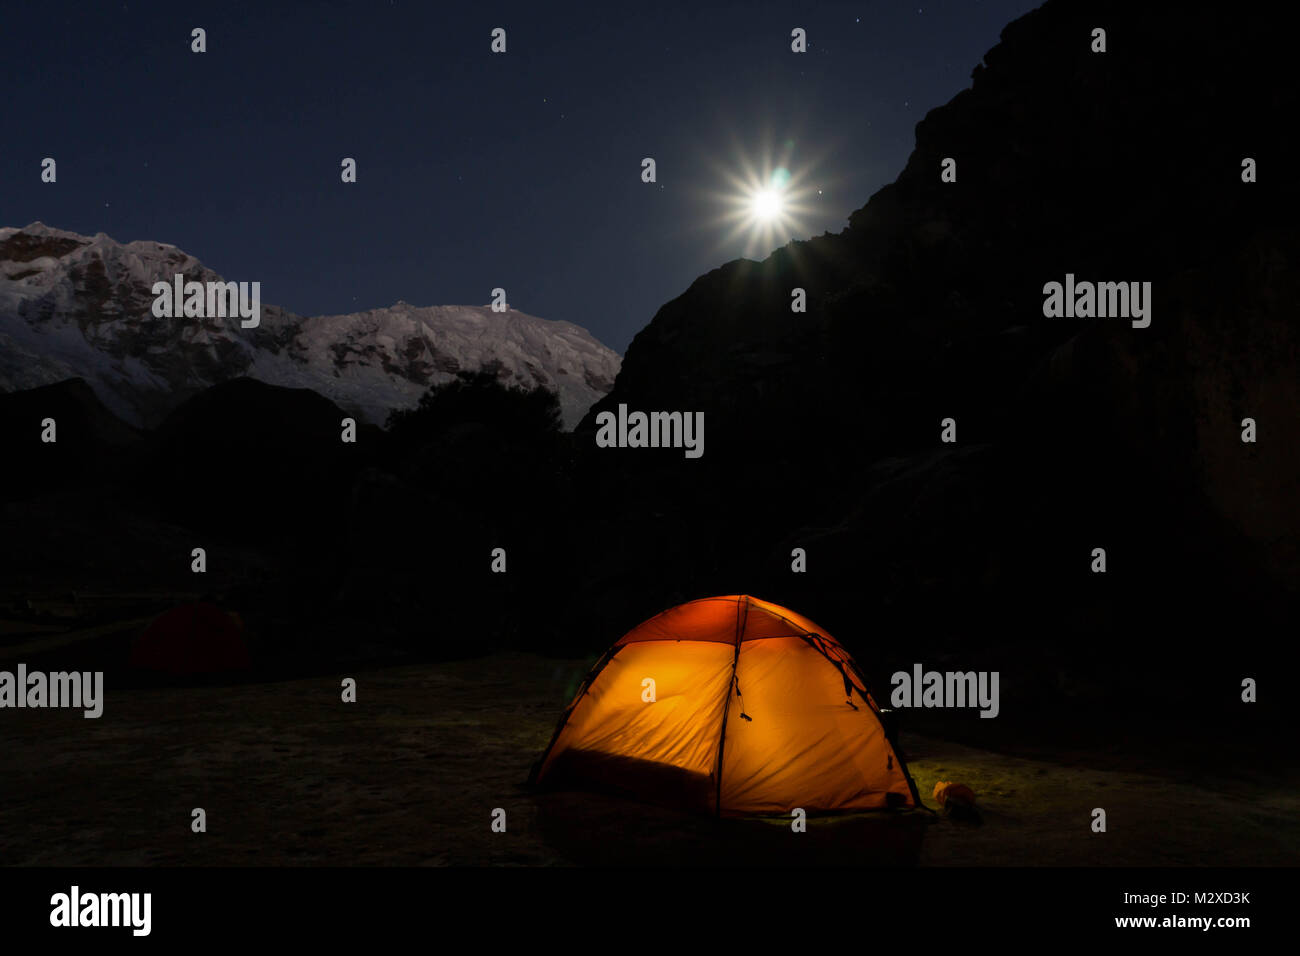 Sous une pleine lune dans un paysage de montagnes avec une orange tente dans l'avant-plan Banque D'Images